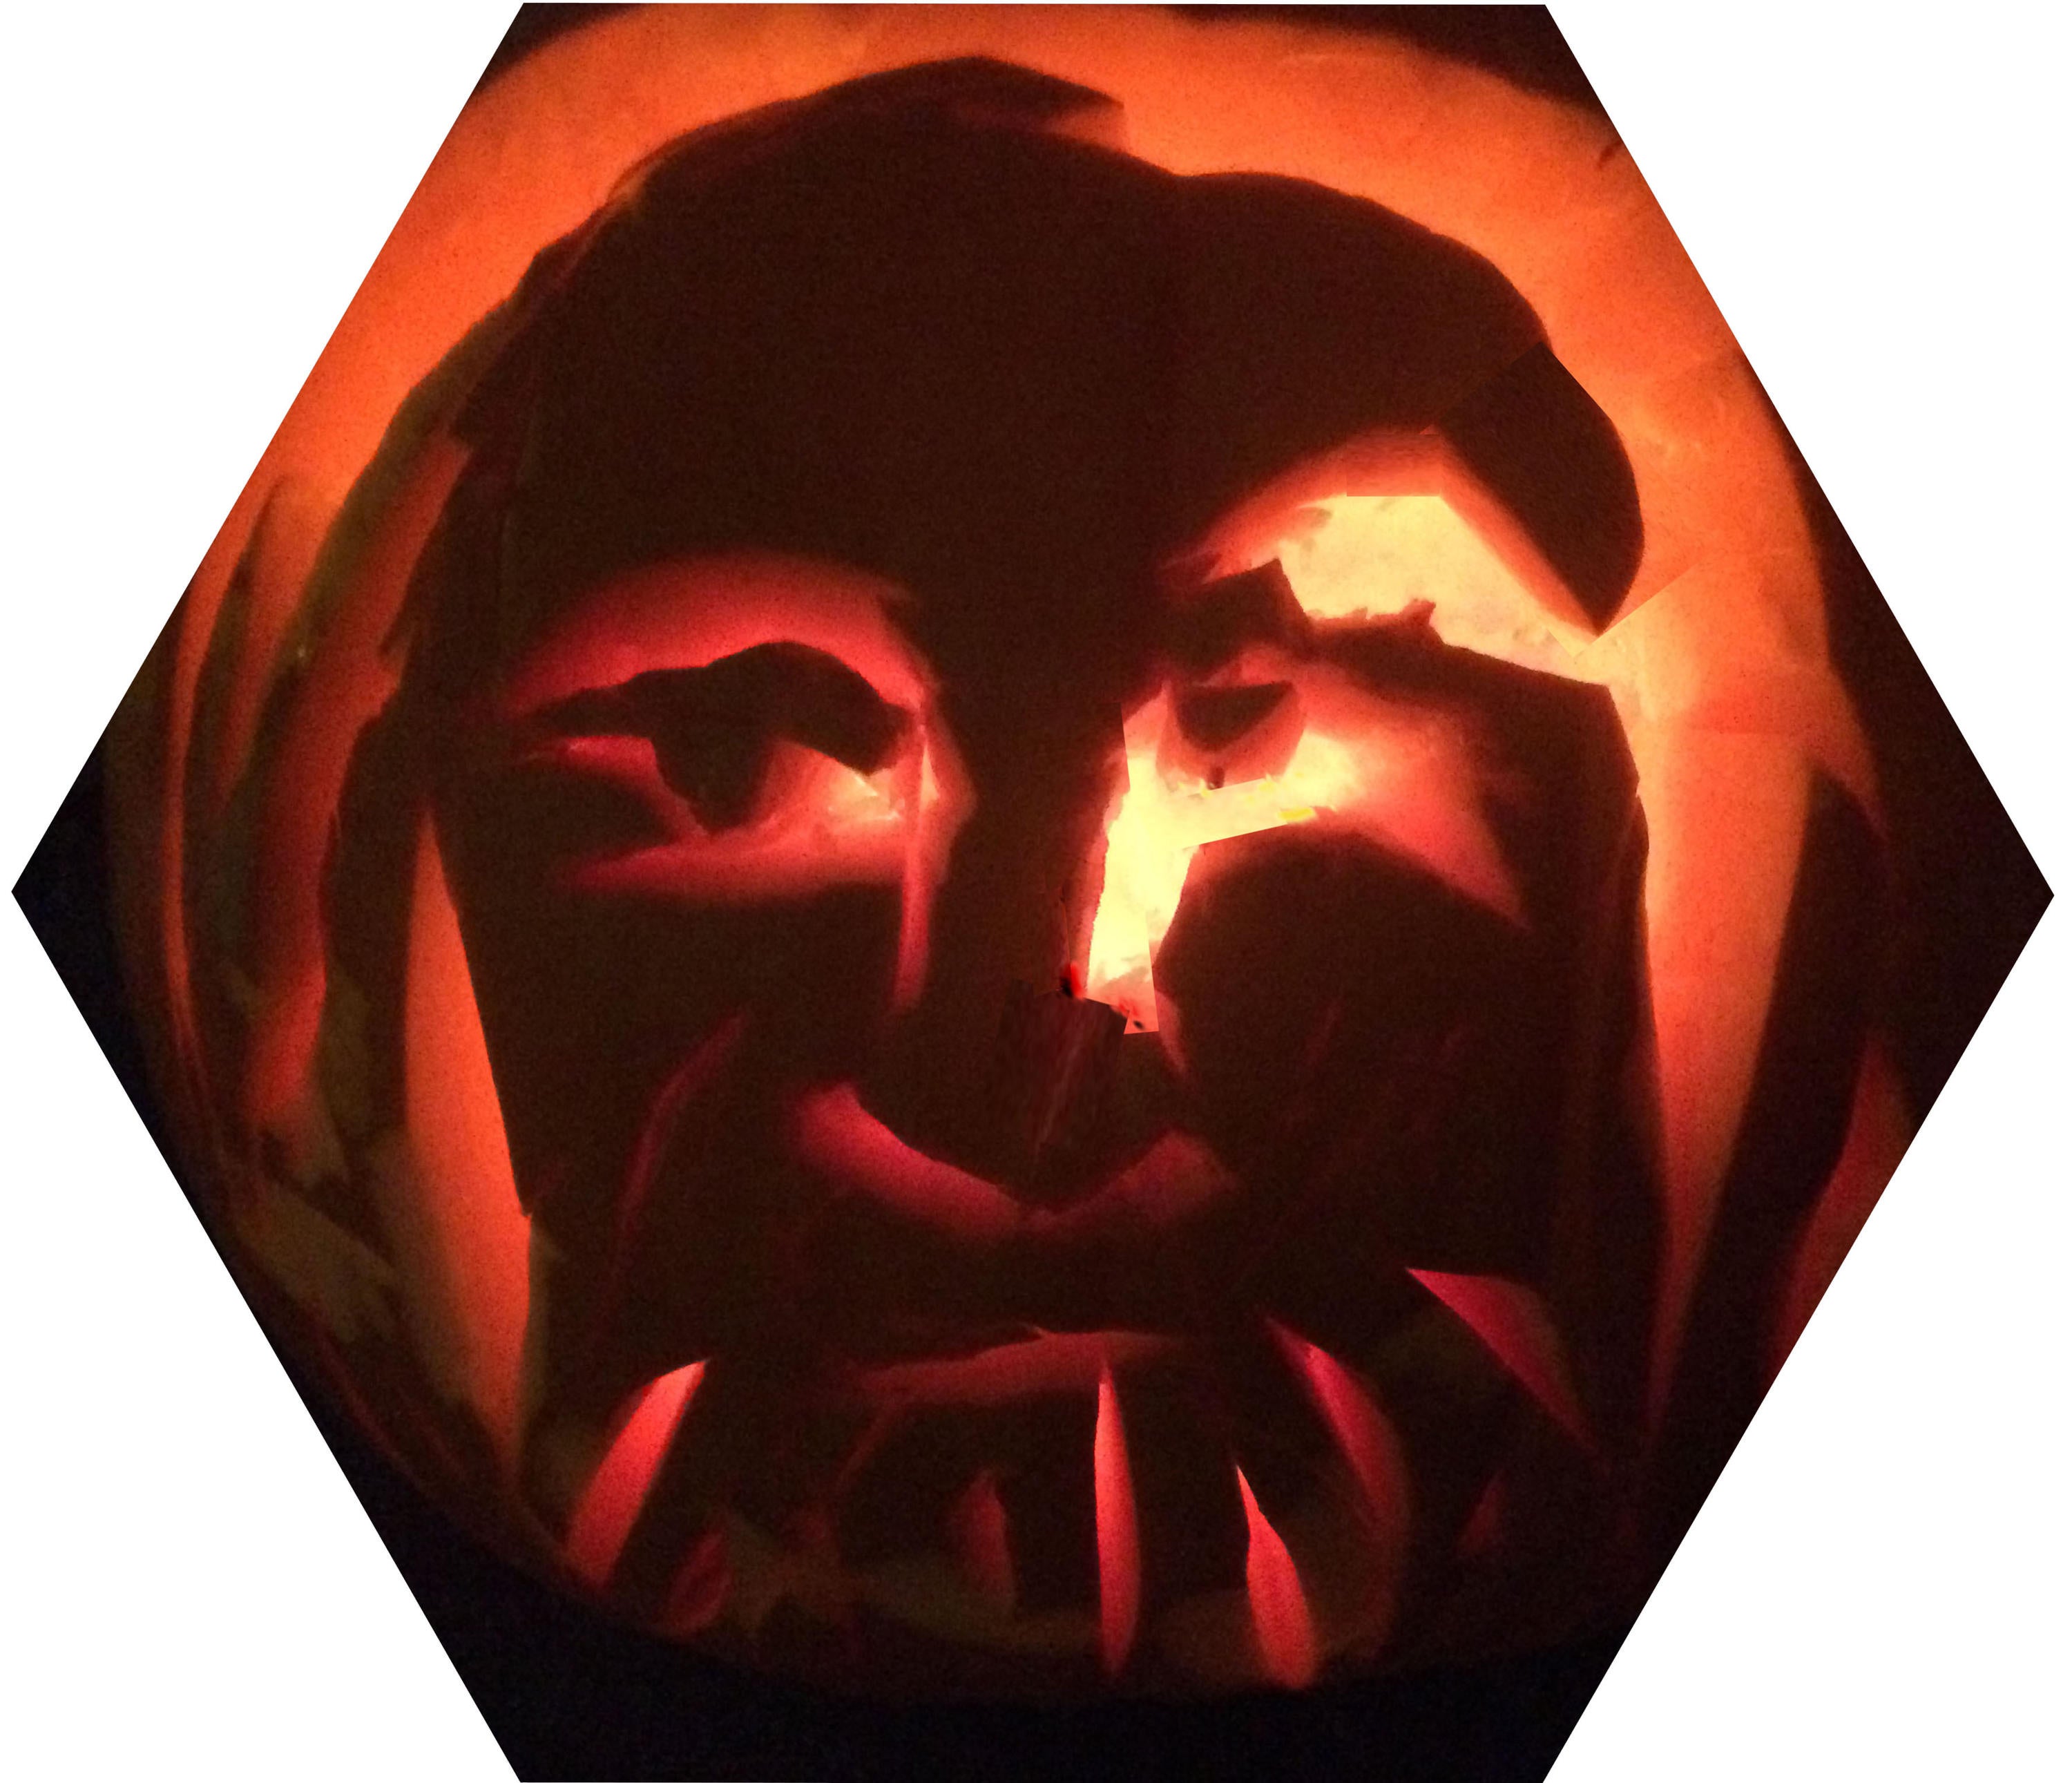 Mendeleev image in a pumpkin